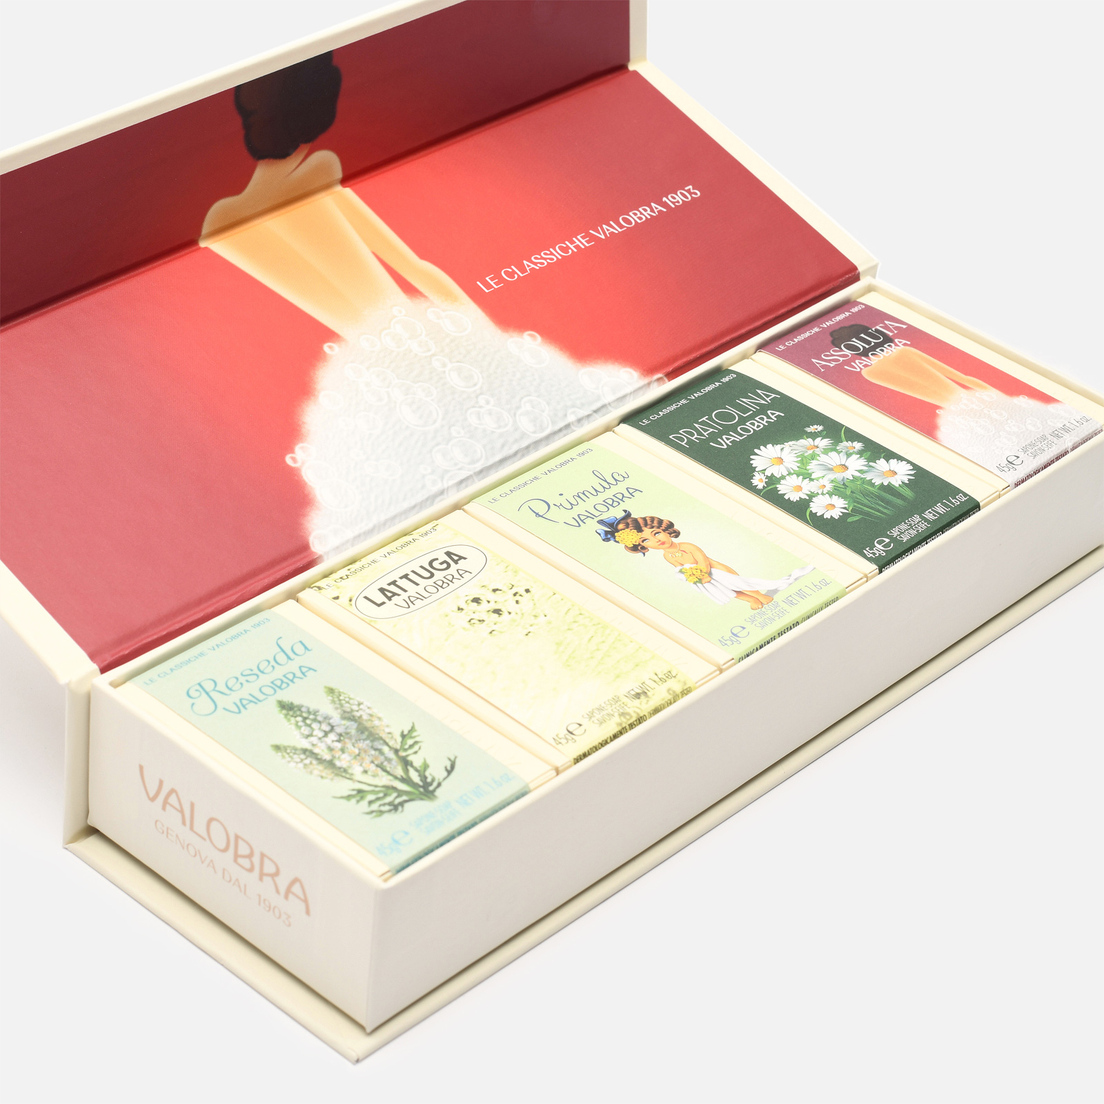 Valobra Подарочный набор мыла Assoluta Gift Box